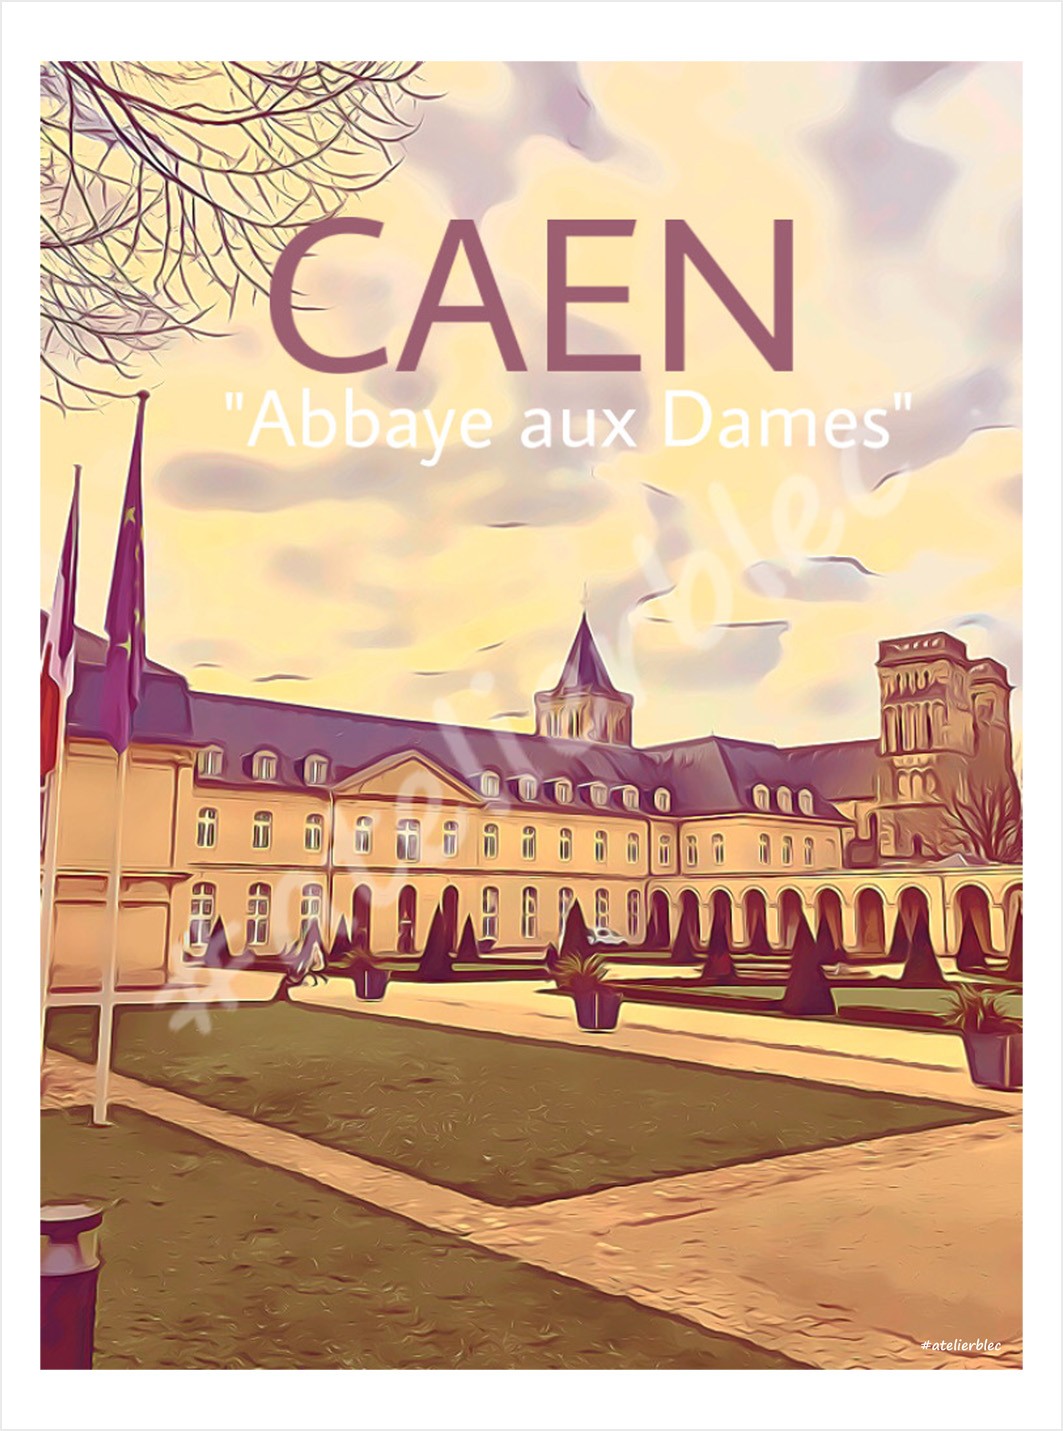 Caen abbaye aux dames